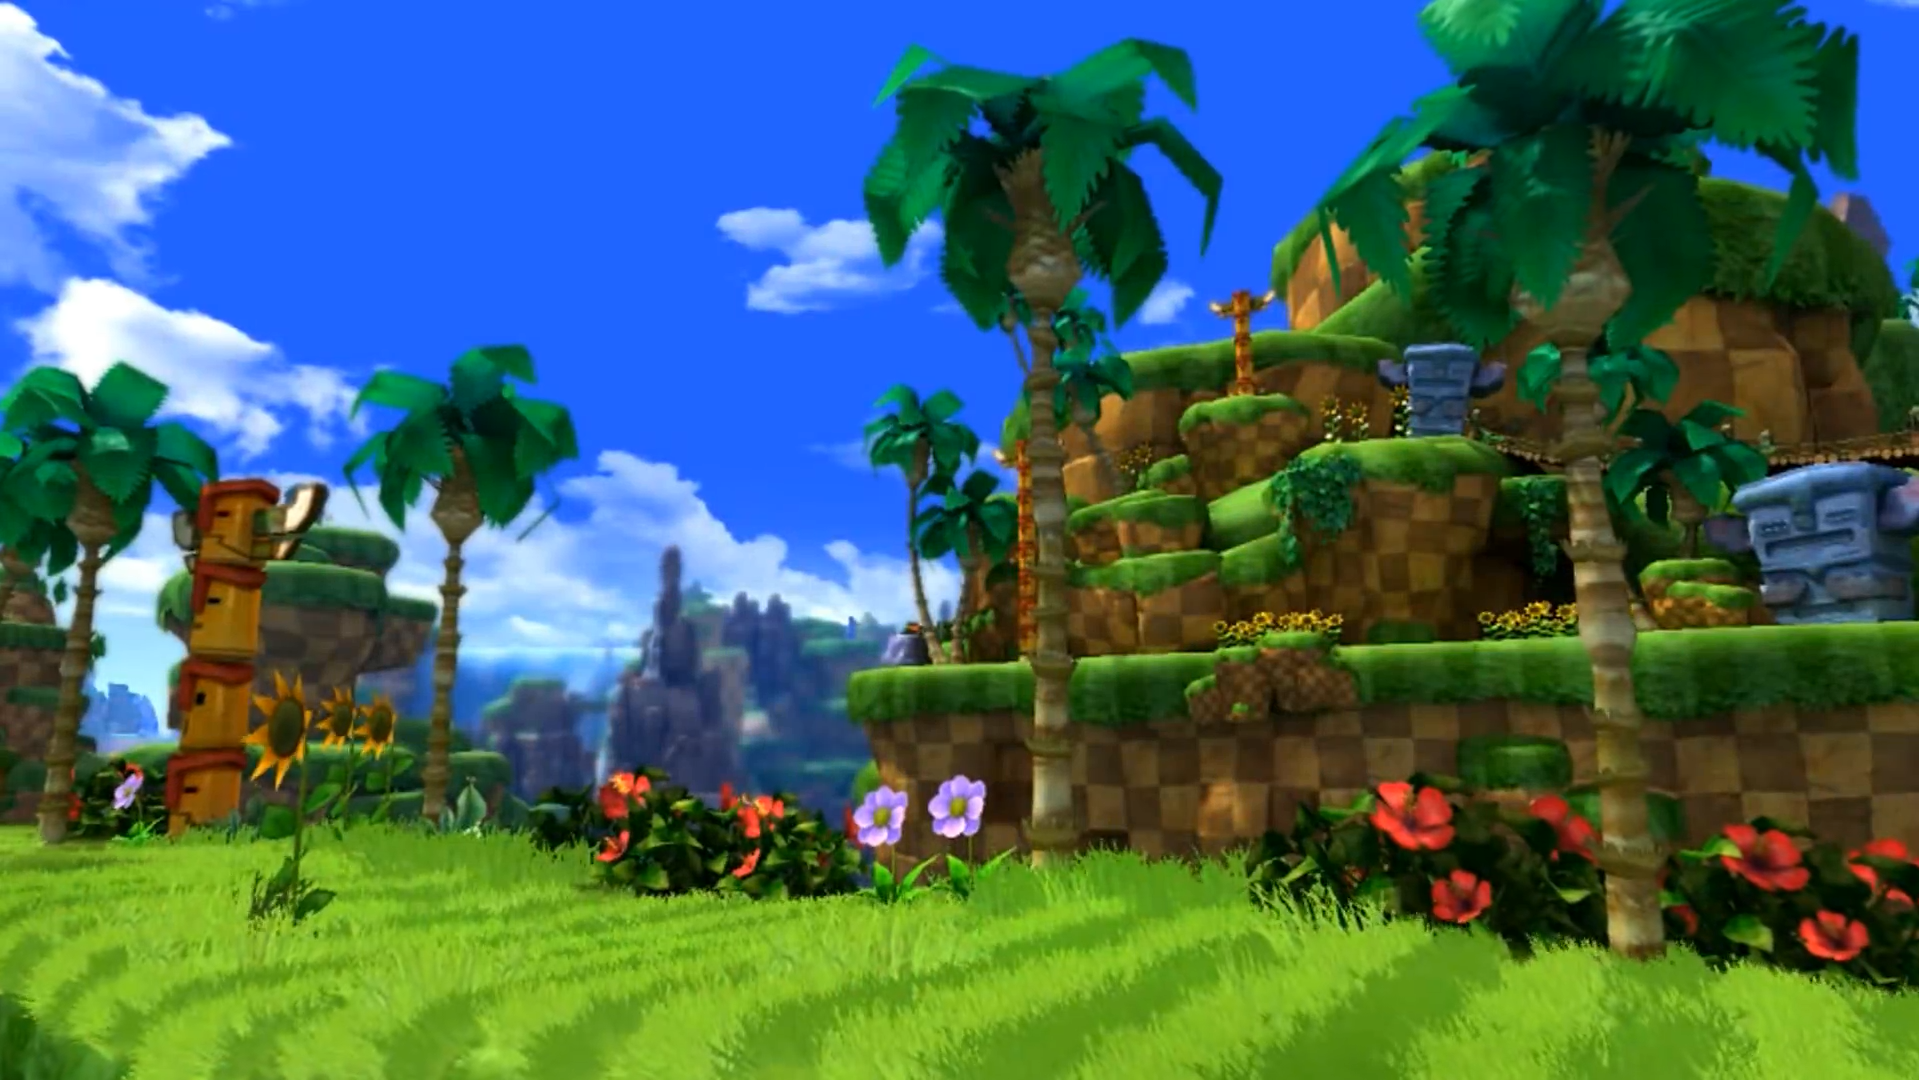 Sonic phiên bản cổ điển và Green Hill Zone đã trở thành biểu tượng cho thế hệ người chơi game. Hãy xem bức ảnh về Classic Sonic - Green Hill Zone để được hòa mình vào không khí của tuổi thơ và trở lại với những ký ức tuổi thơ.